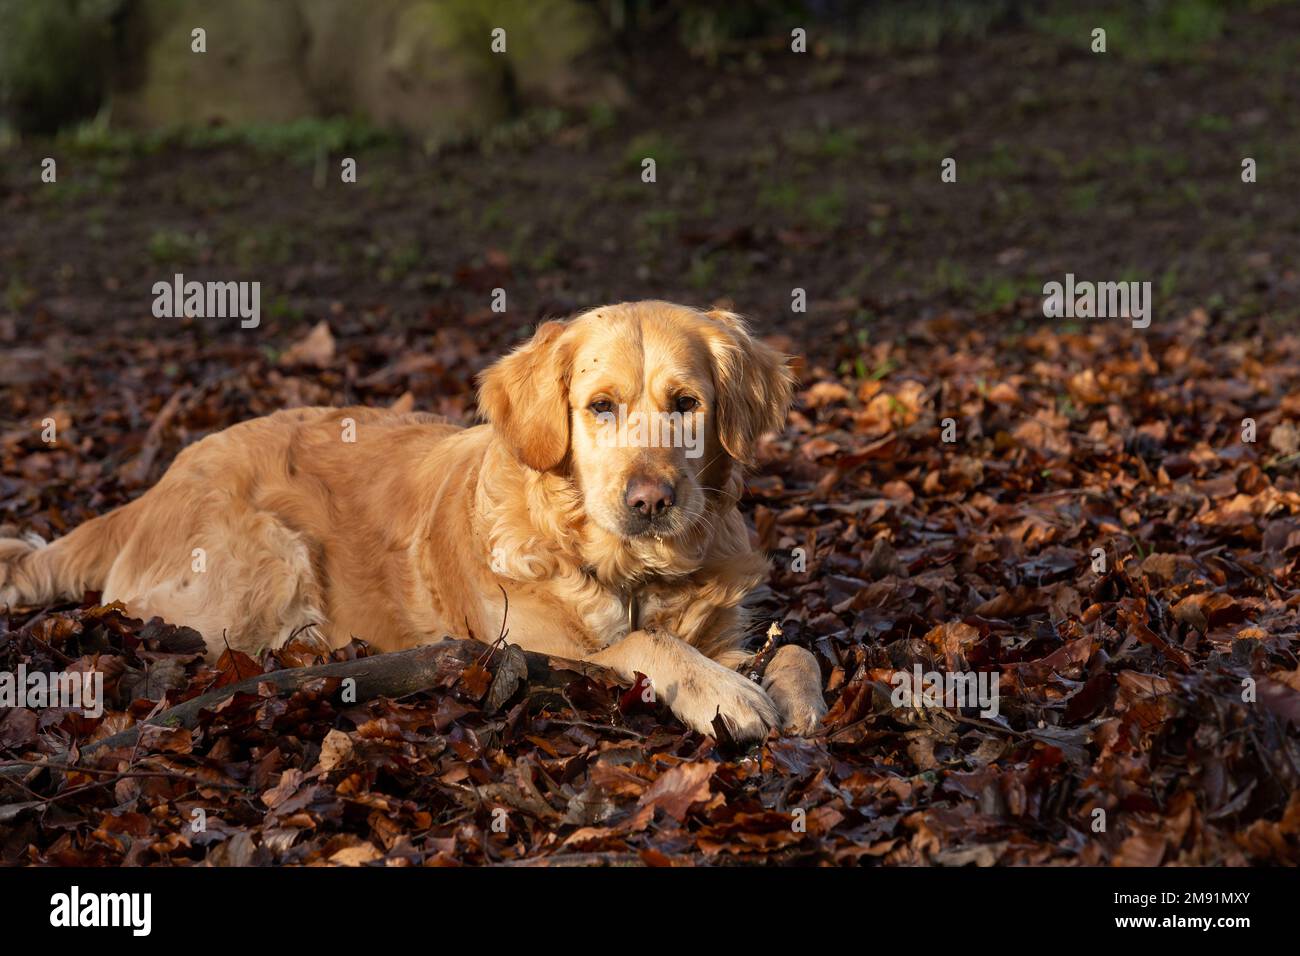 A golden retriever lies in fallen, autumn leaves eating a stick. Stock Photo